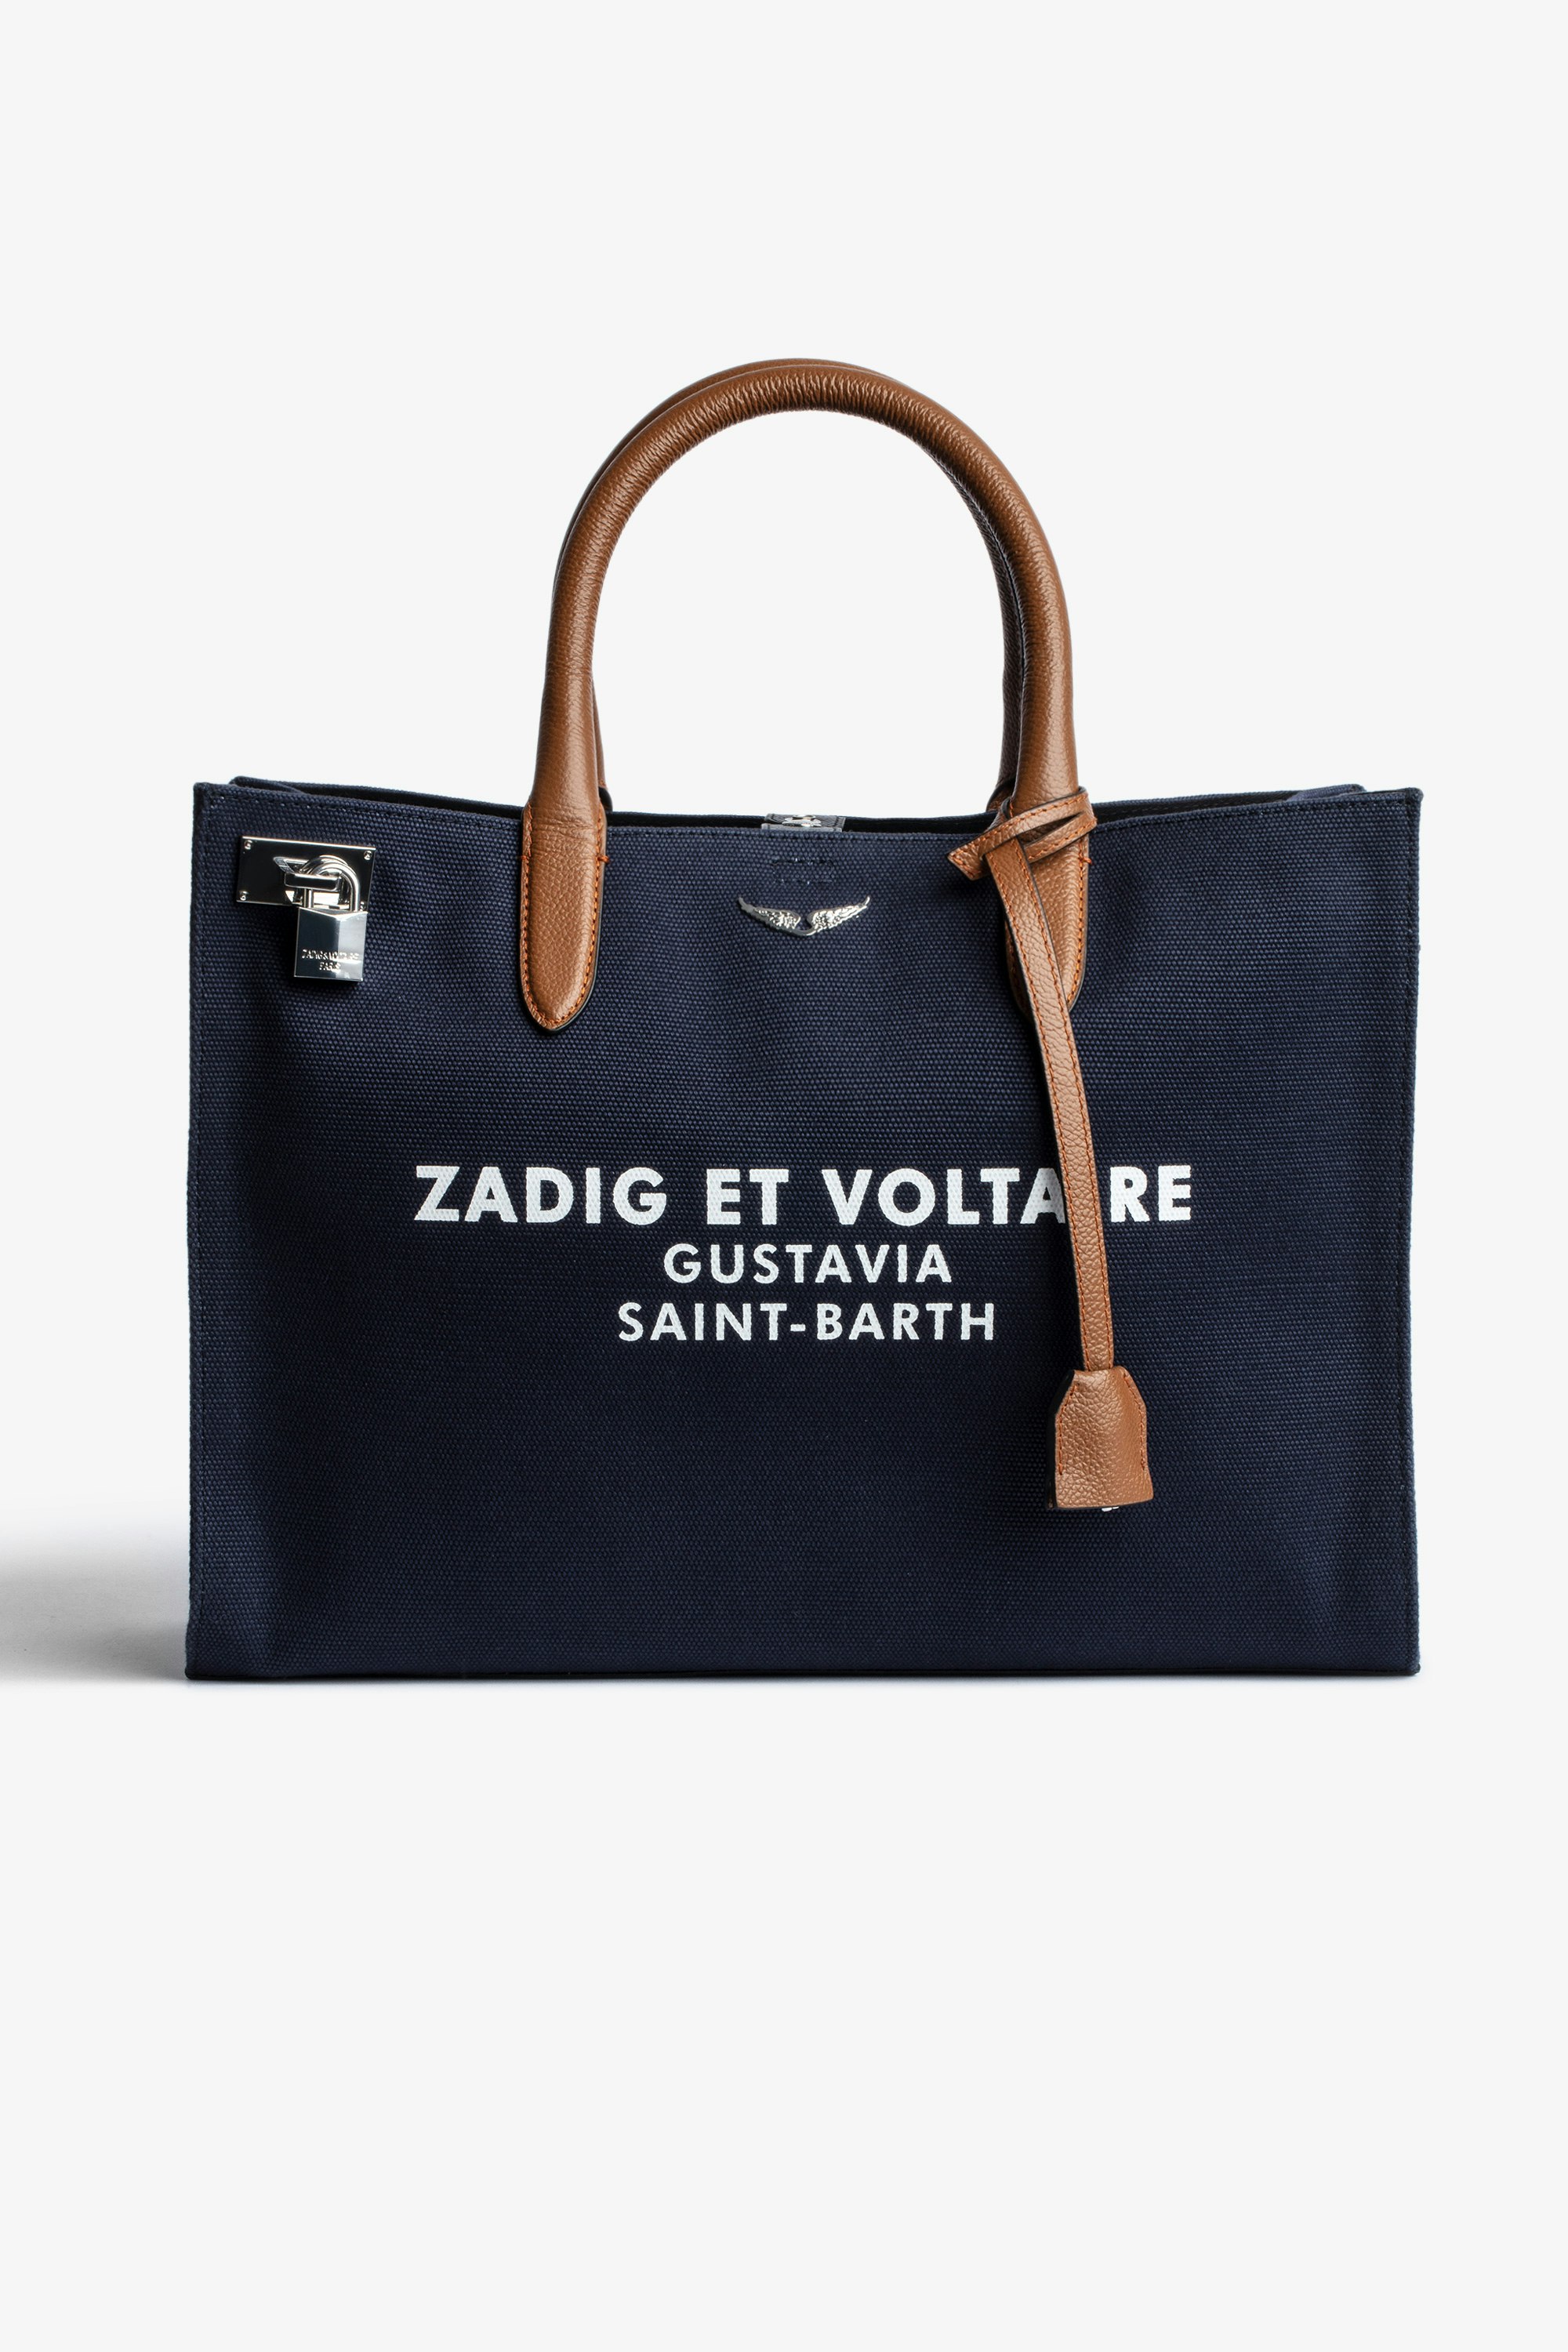 Tasche Candide Large Saint Barth Damentasche Candide Large aus marineblauem Canvas mit Saint-Barth-Druck